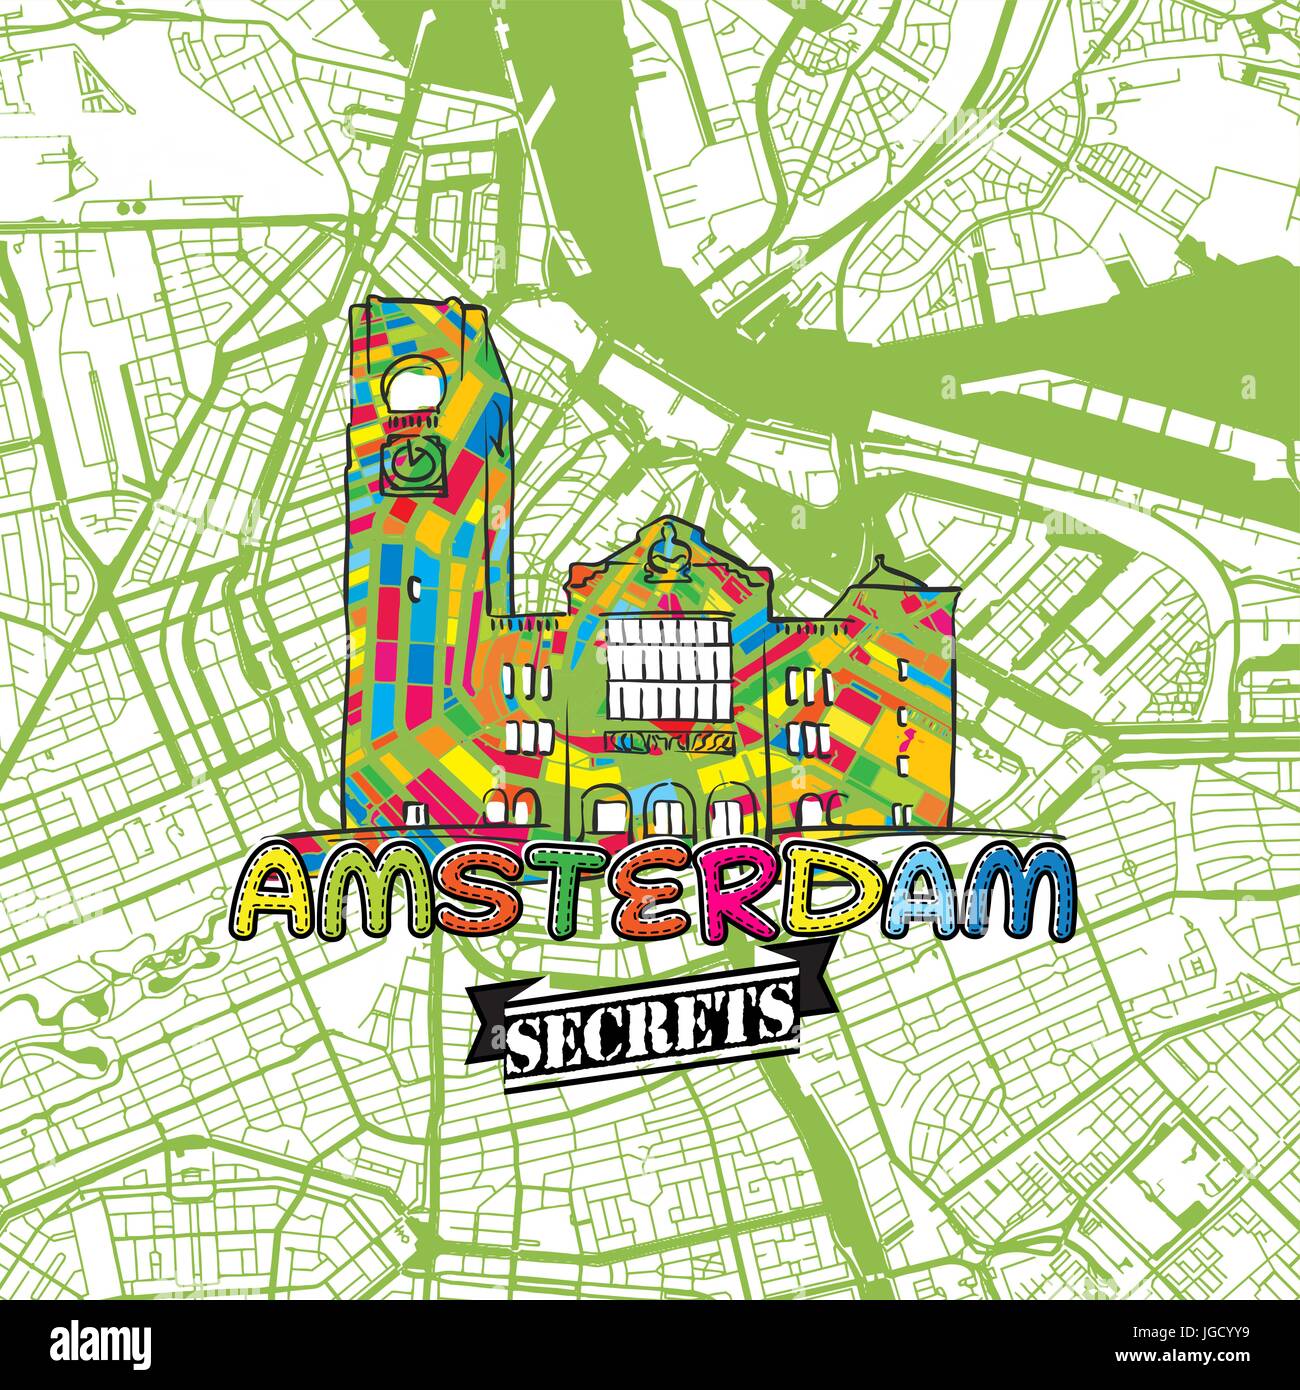 Billet d'Amsterdam Art Secrets Site pour la cartographie des experts et des guides de voyage. Le logo de la ville à la main, typo de badge et dessinés à la main sur le dessus de l'image vectorielle sont regroupés Illustration de Vecteur